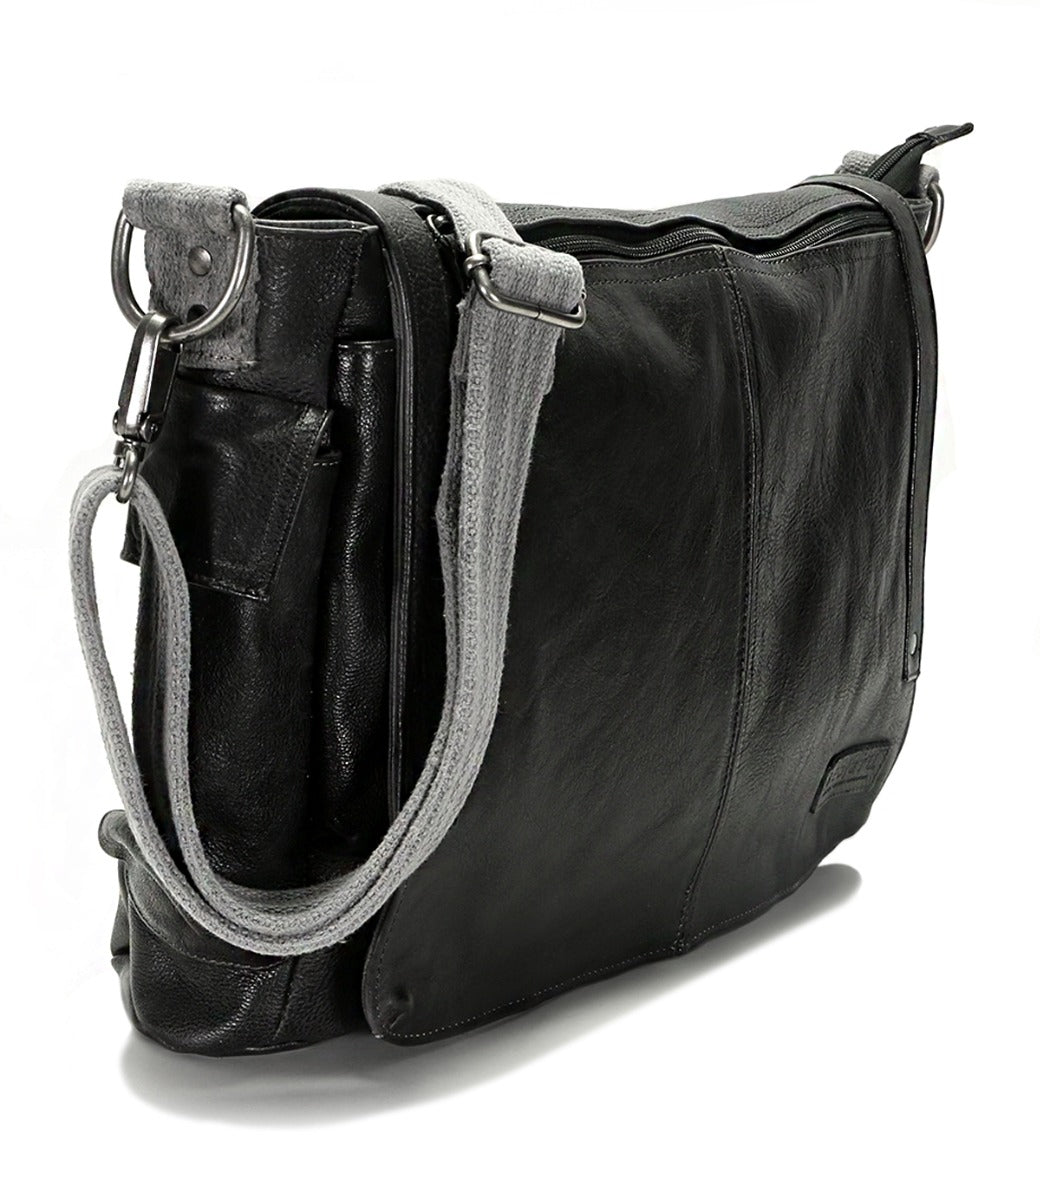 A black leather Bed Stu Hawkeye II messenger bag.